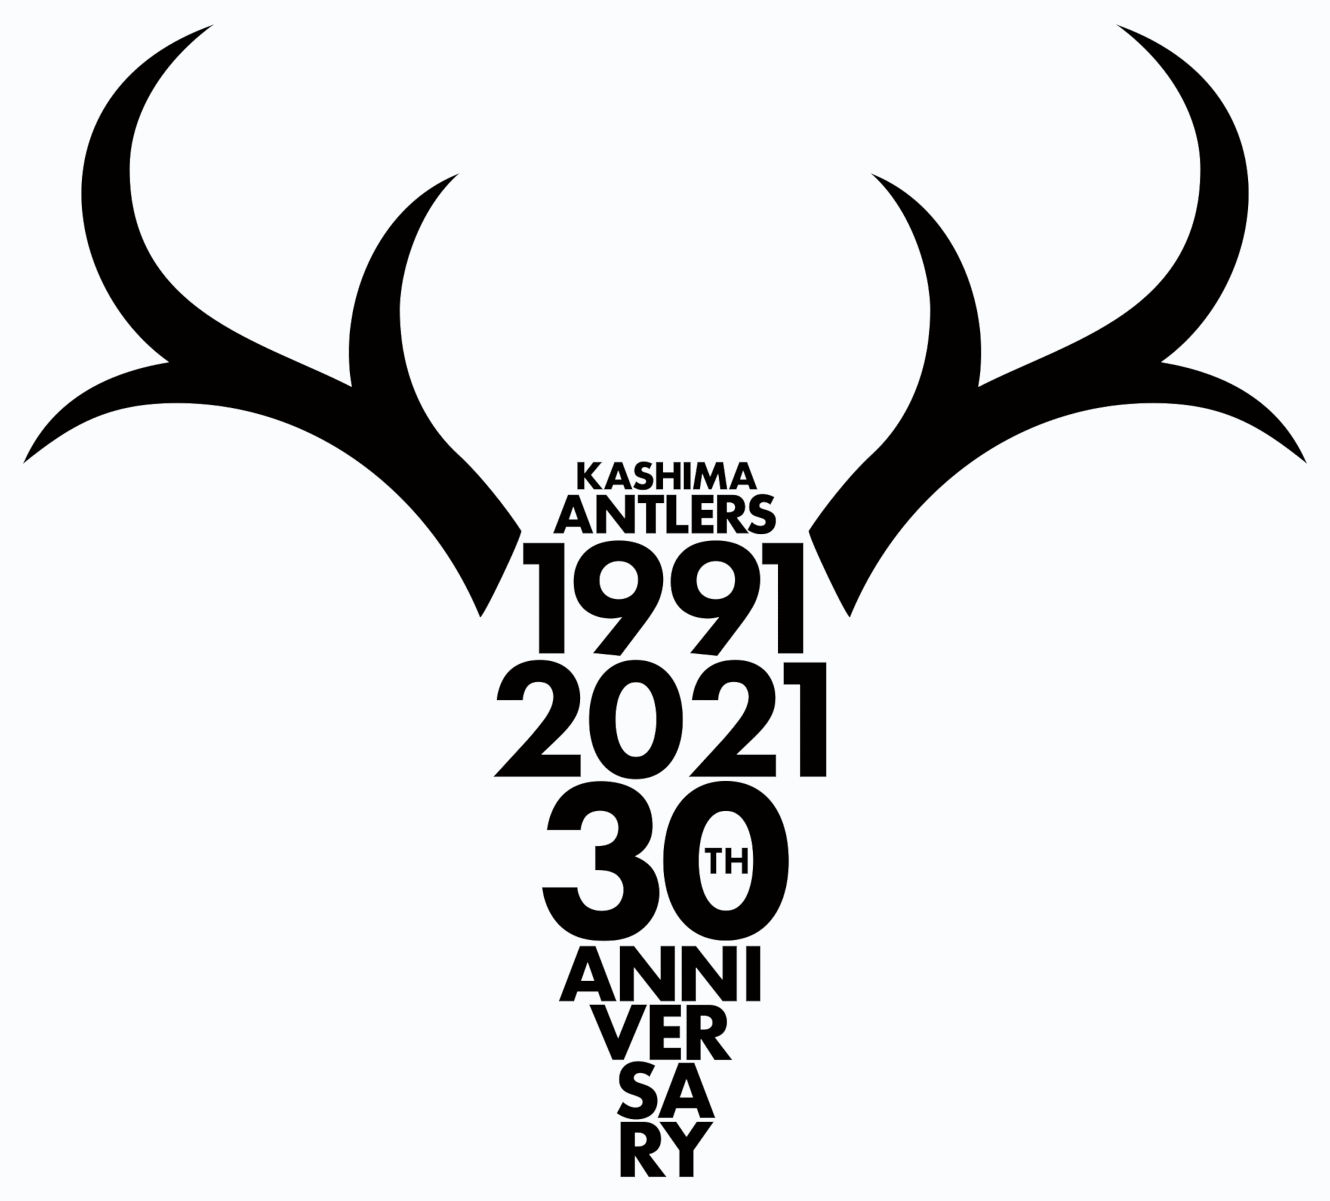 鹿島アントラーズ クラブ創設30周年記念ロゴほか 注目のデザインの裏側 ブレーンデジタル版